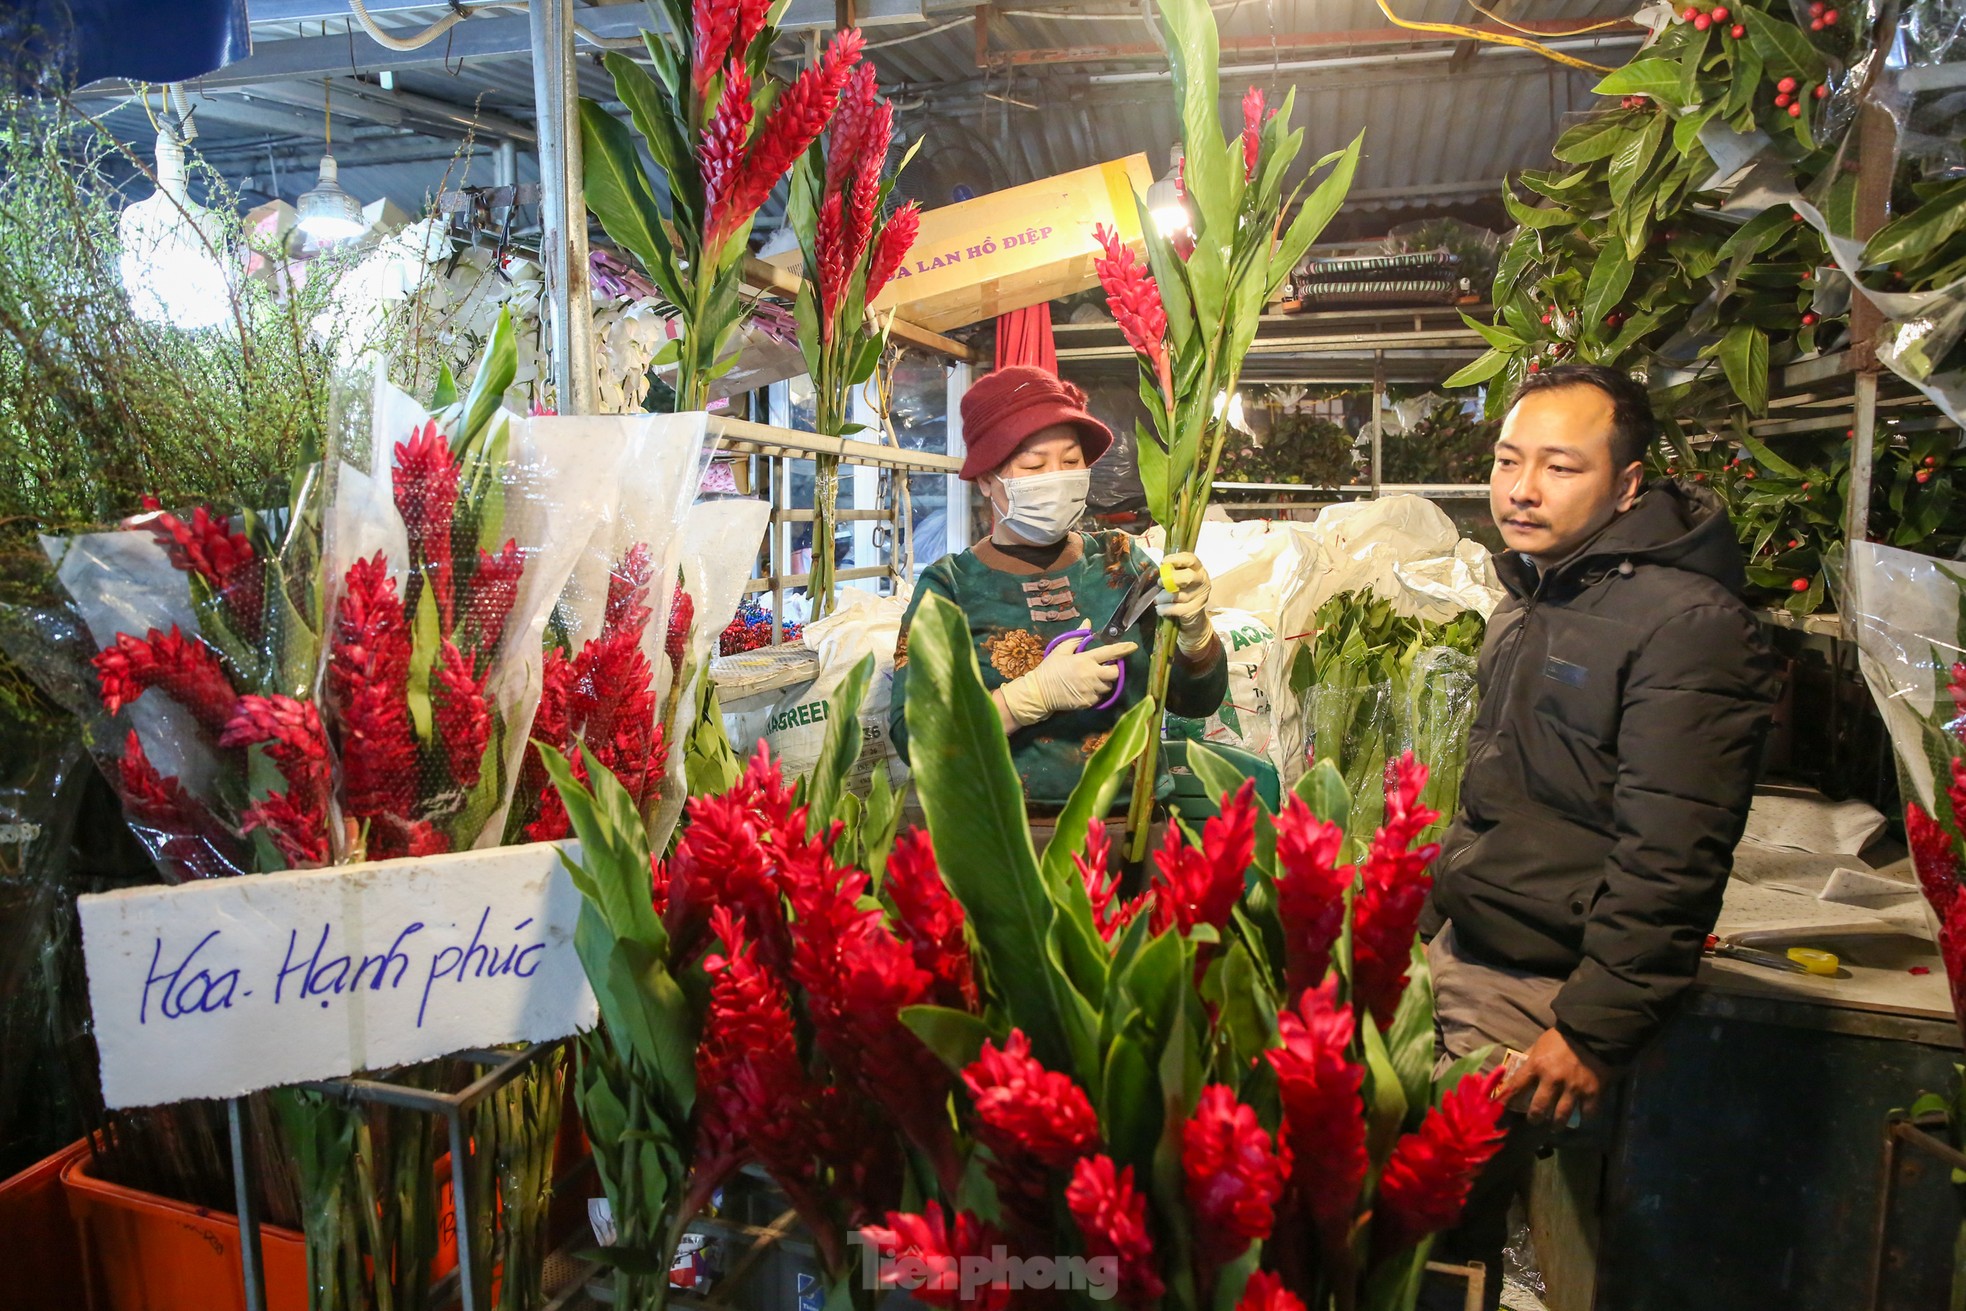 Đêm không ngủ ở chợ hoa lớn nhất Hà Nội giáp Tết - Ảnh 9.